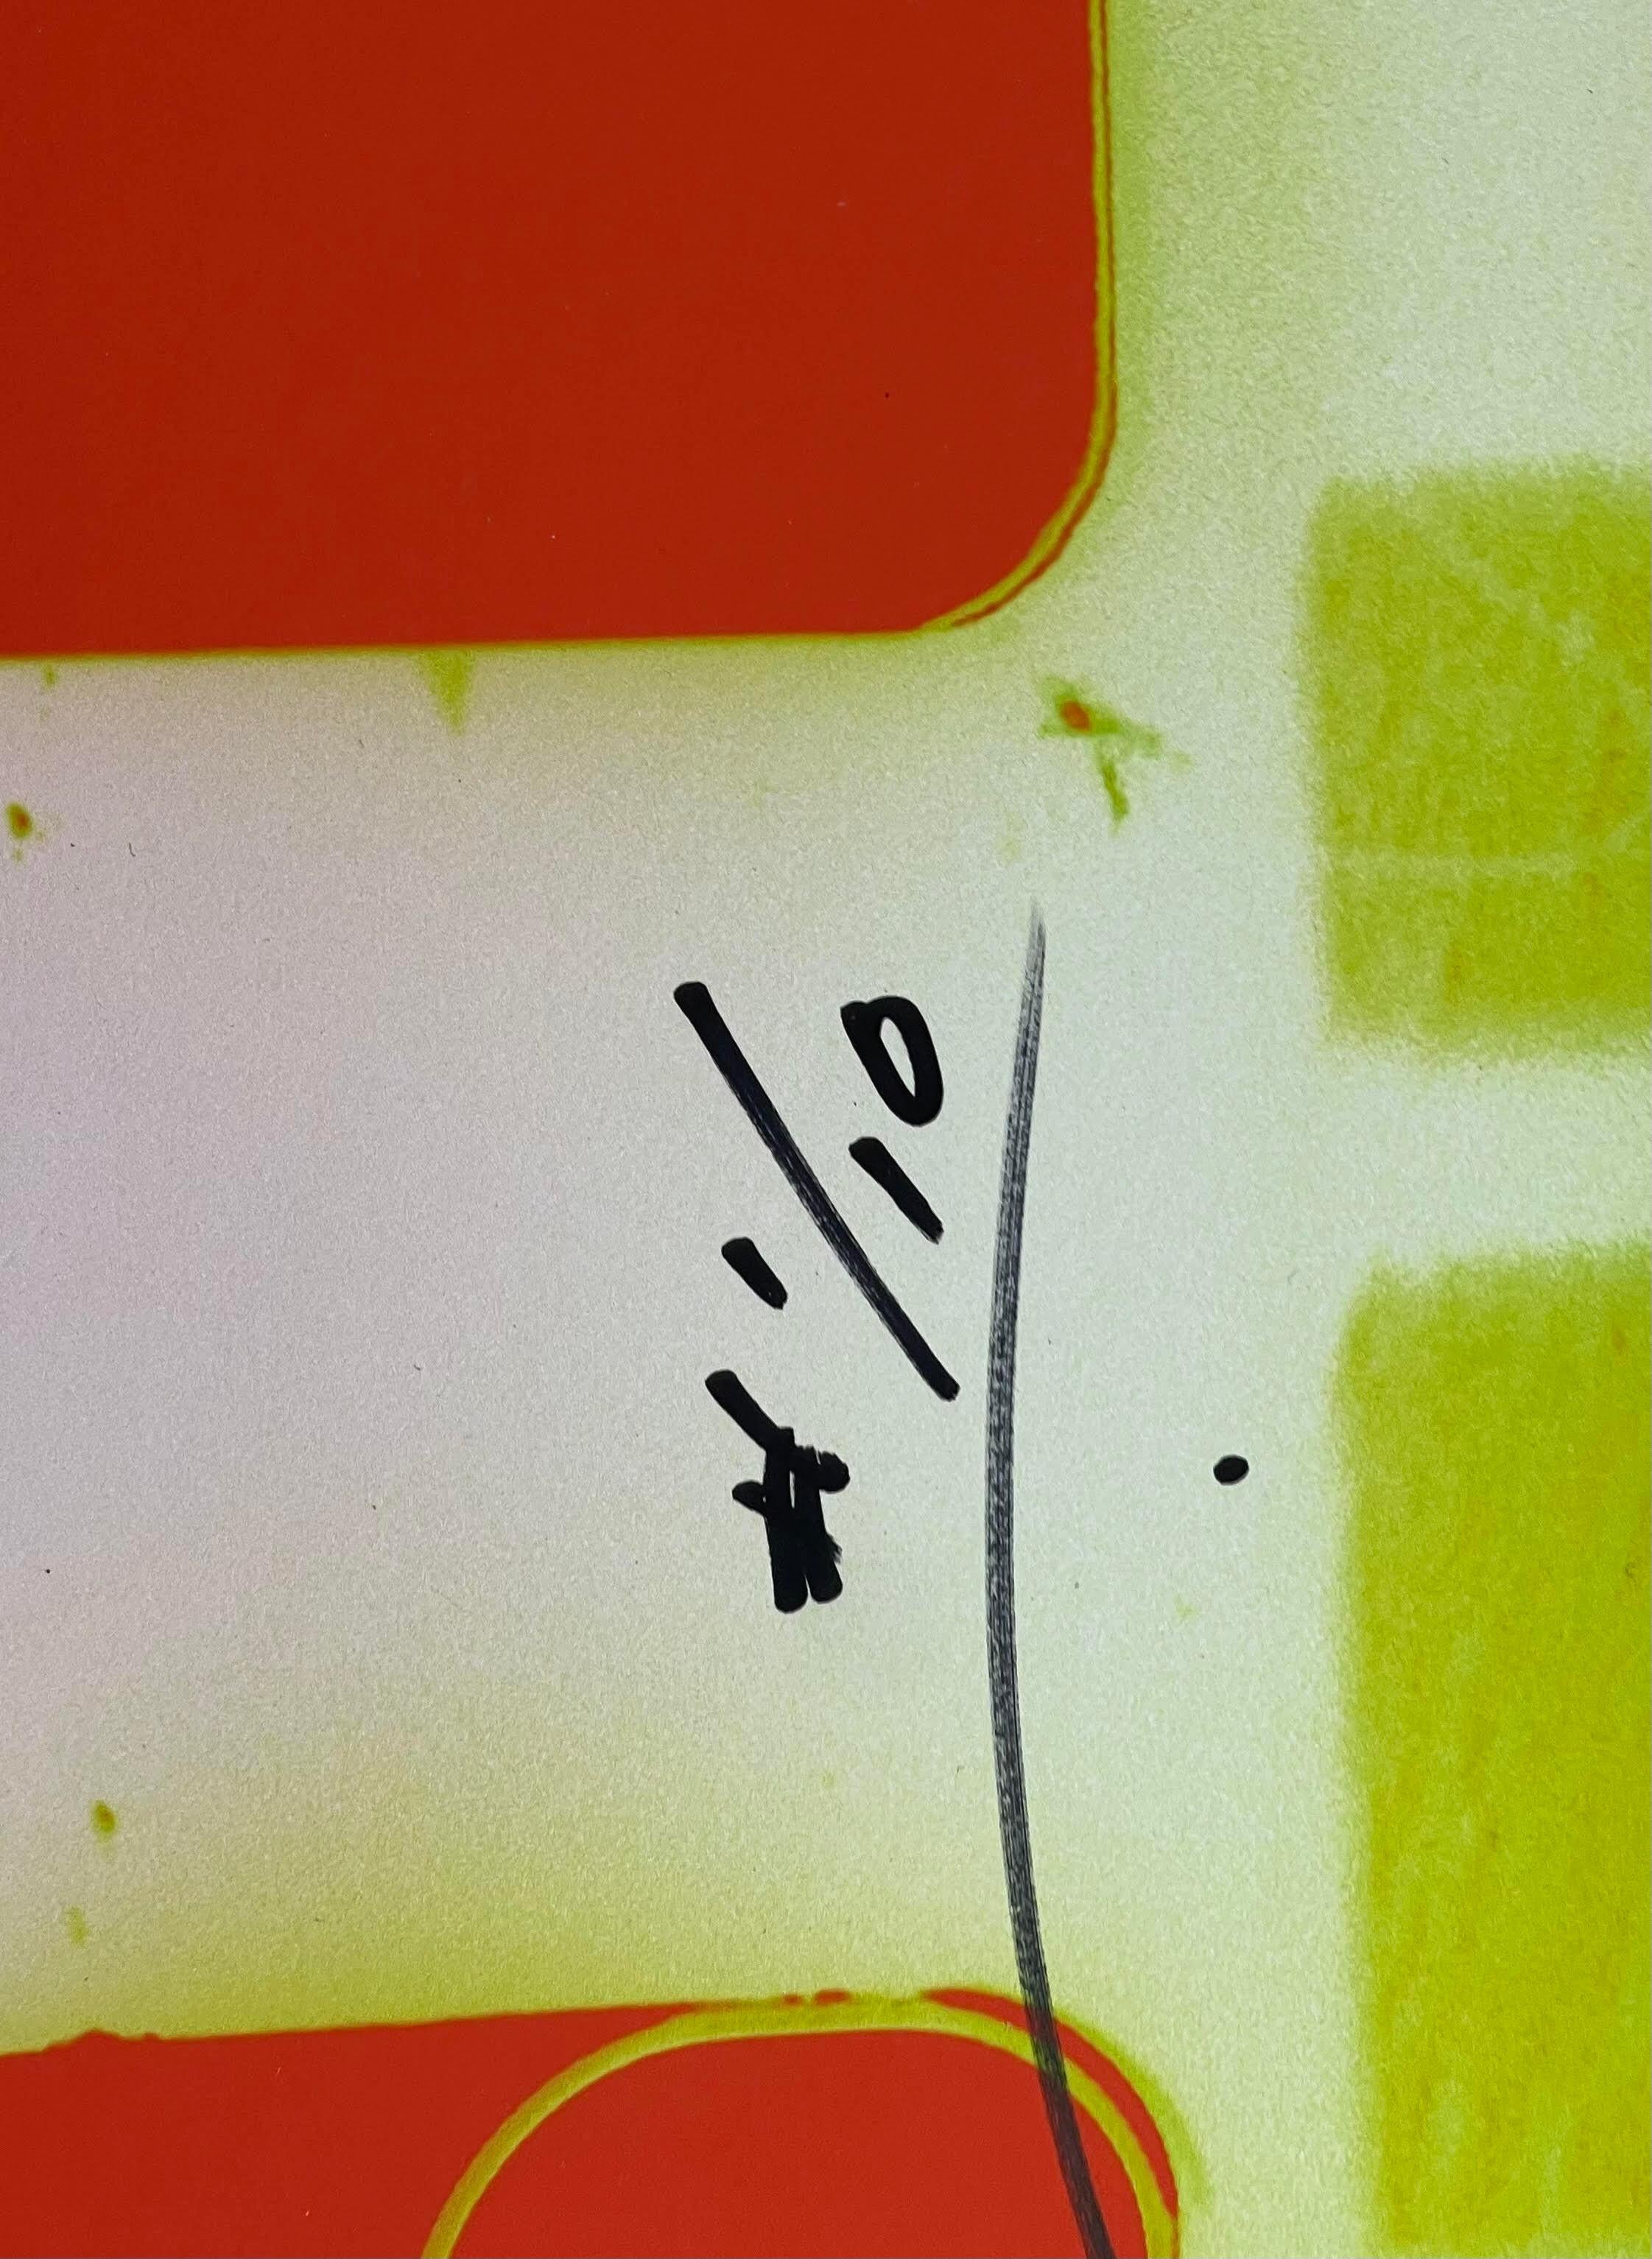 Richard Corman
Keith Haring 1 - NYC, 1985 (zweimal handsigniert), 2022
Fotodruck auf Hahnemühle Photo Rag Ultrasmooth Papier, aufgezogen auf Dibond-Aluminiumkarton. (Handsigniert und nummeriert auf der Vorder- und Rückseite der Tafel)
Zweimal